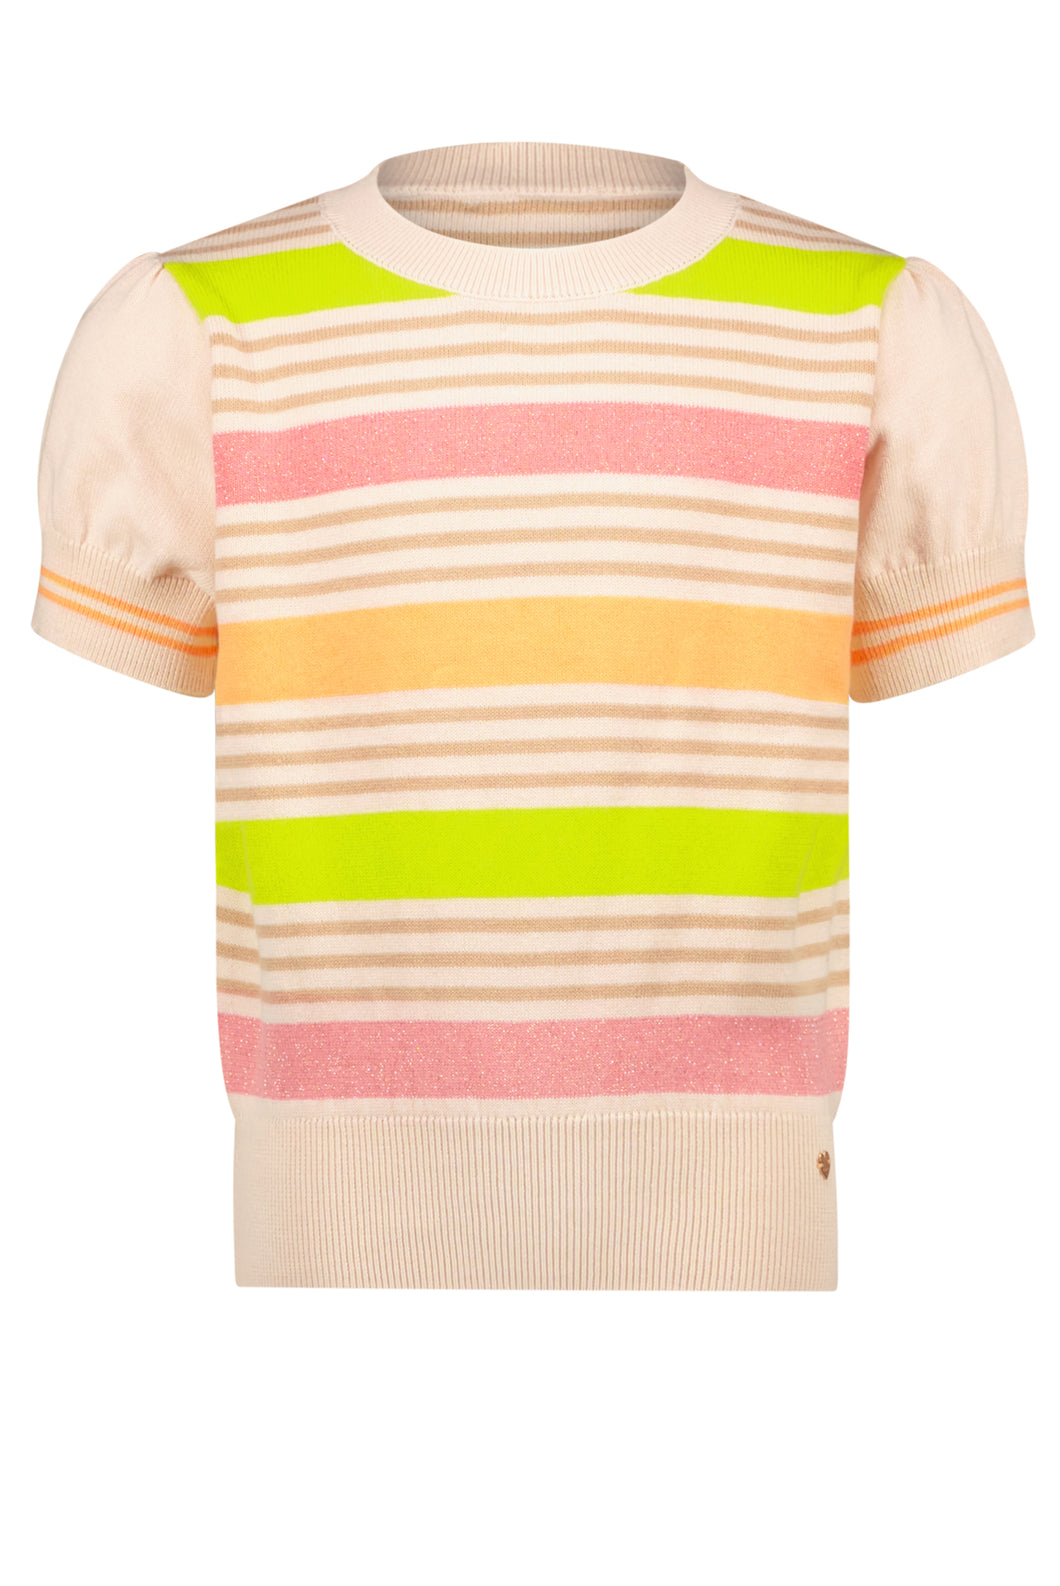 Kae Peach Striped Knit Top N302-5310